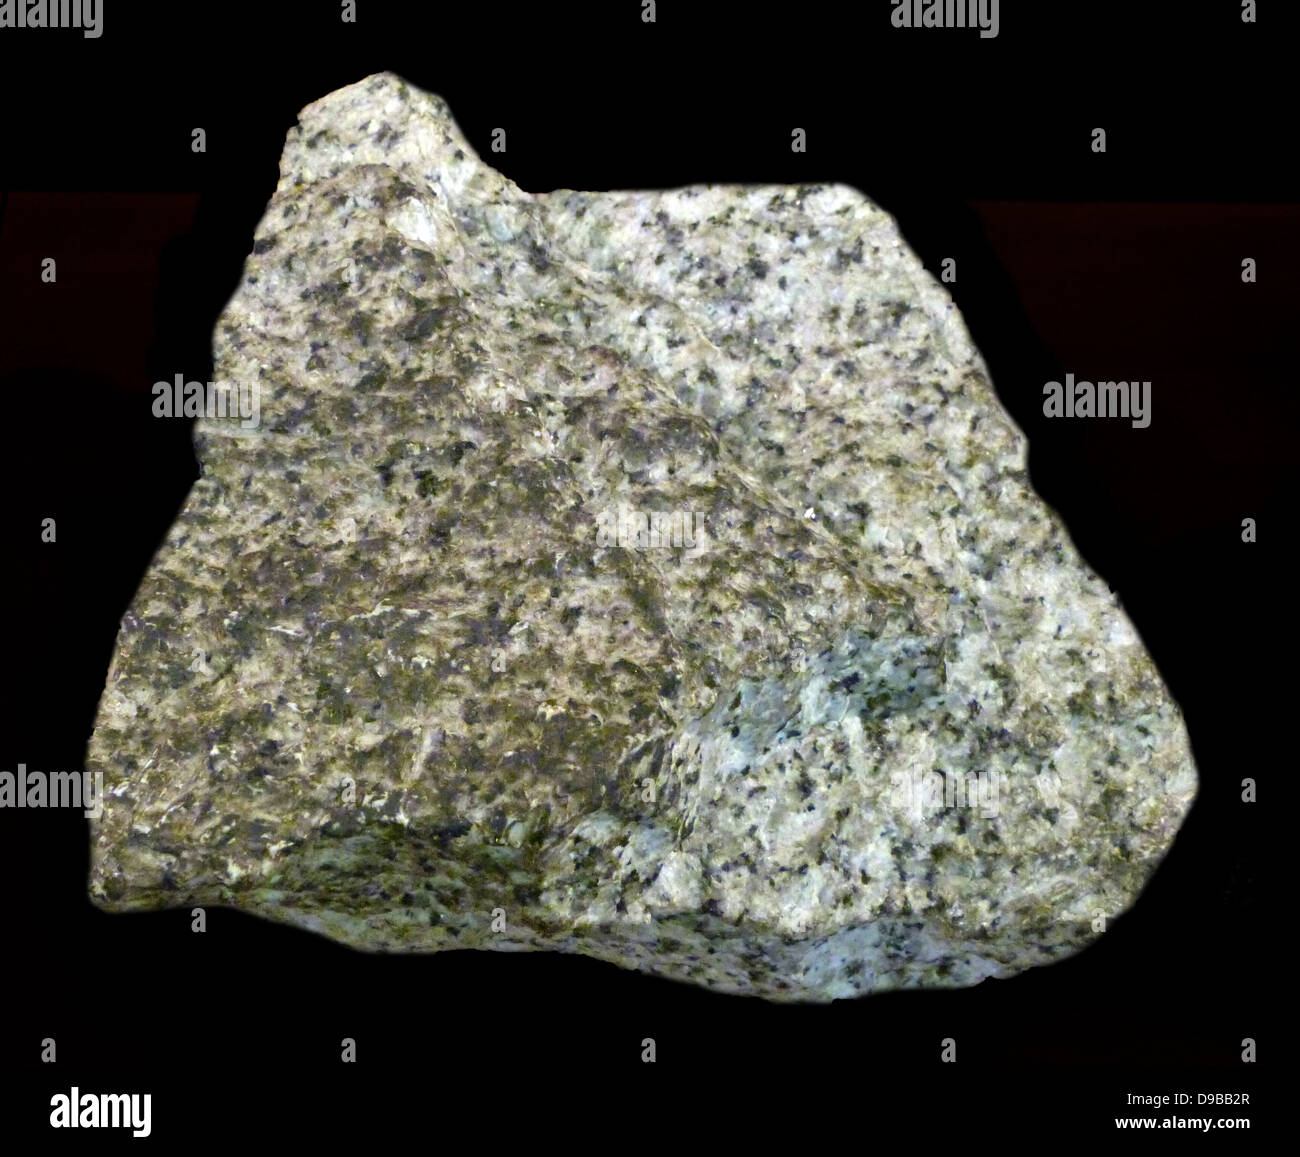 Granit - ist eine häufige und weit verbreitete vorkommende Art der aufdringlichen, Felsic, eruptivgestein. Granit hat normalerweise einen grobkörnigen Textur. Gelegentlich einige einzelne Kristalle sind größer als die Groundmass, in diesem Fall die Textur ist bekannt als Porphyritic. Ein Felsen Mit dieser Textur wird manchmal als Porphyr bekannt. Granite kann Rosa und Grau in Farbe sein. Stockfoto